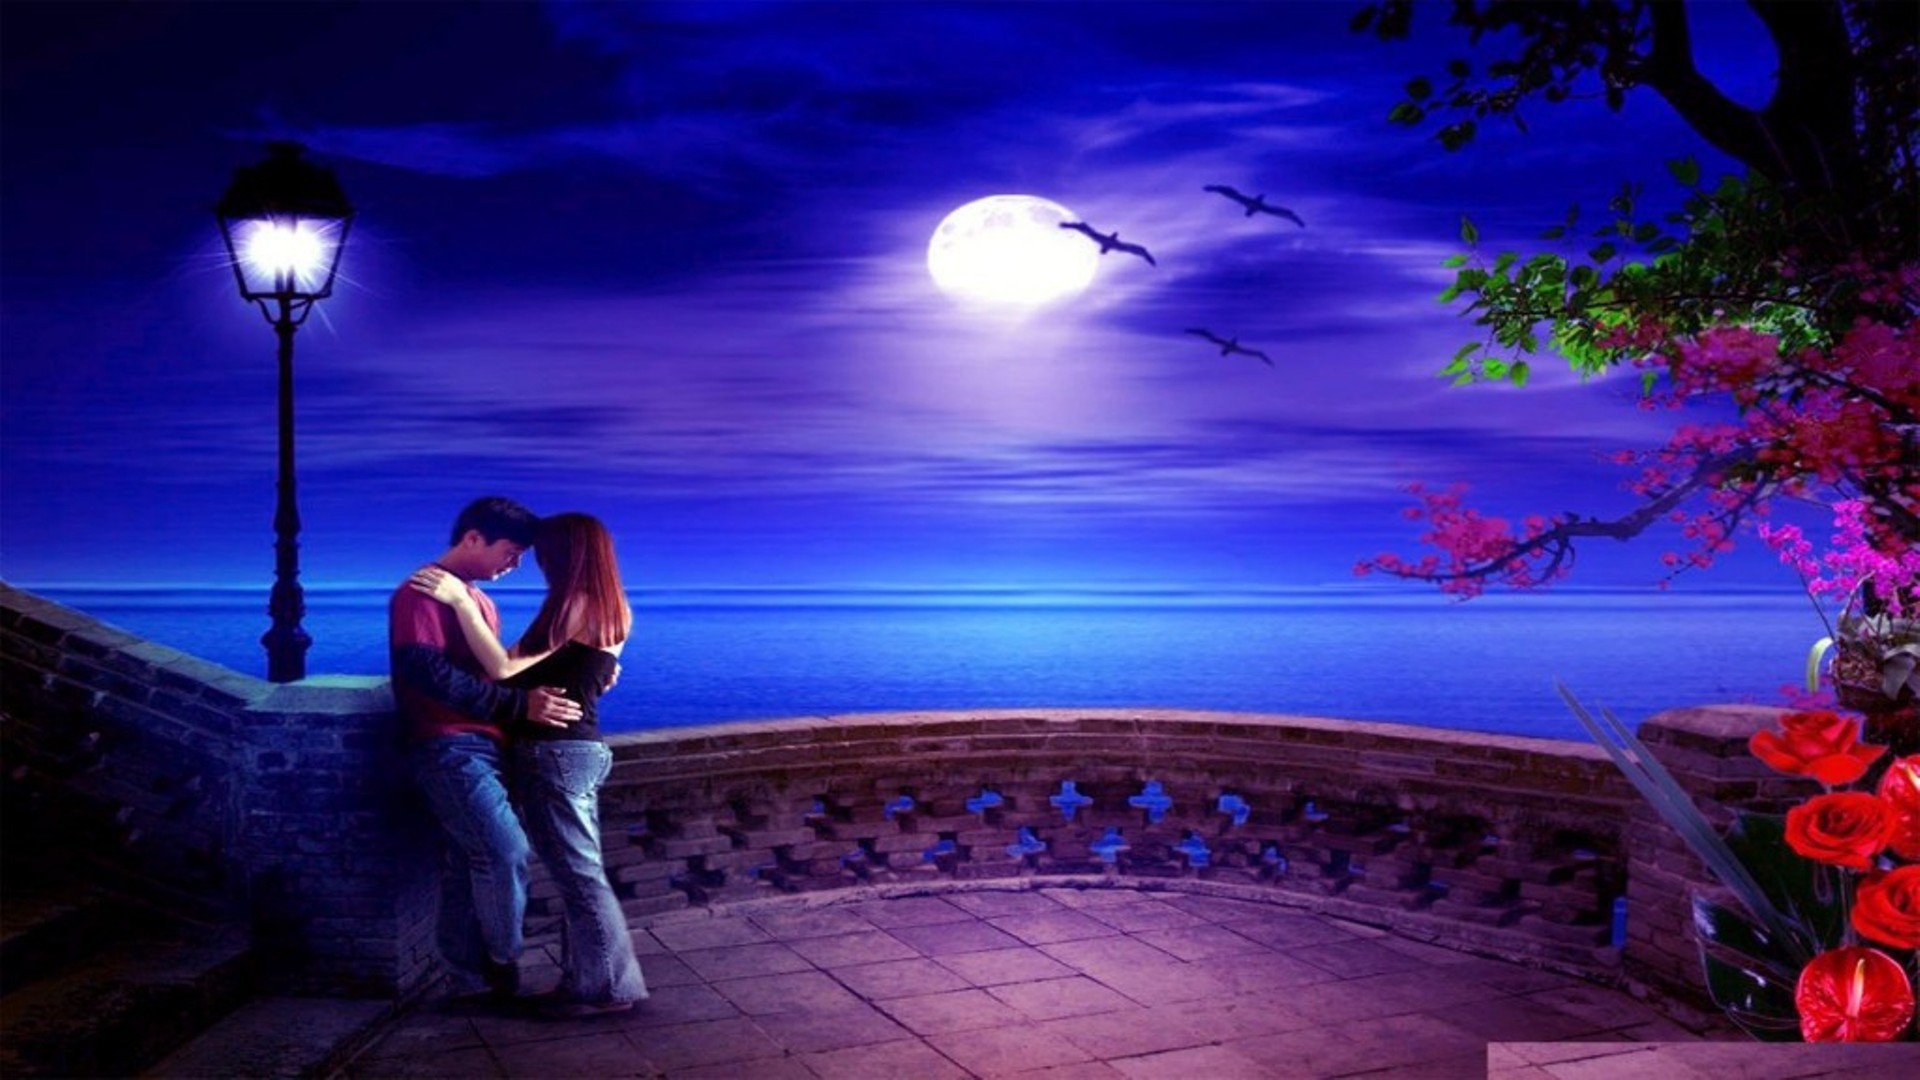 Romantic Love Wallpaper Free Download HD Romantic Wallpaperjpg